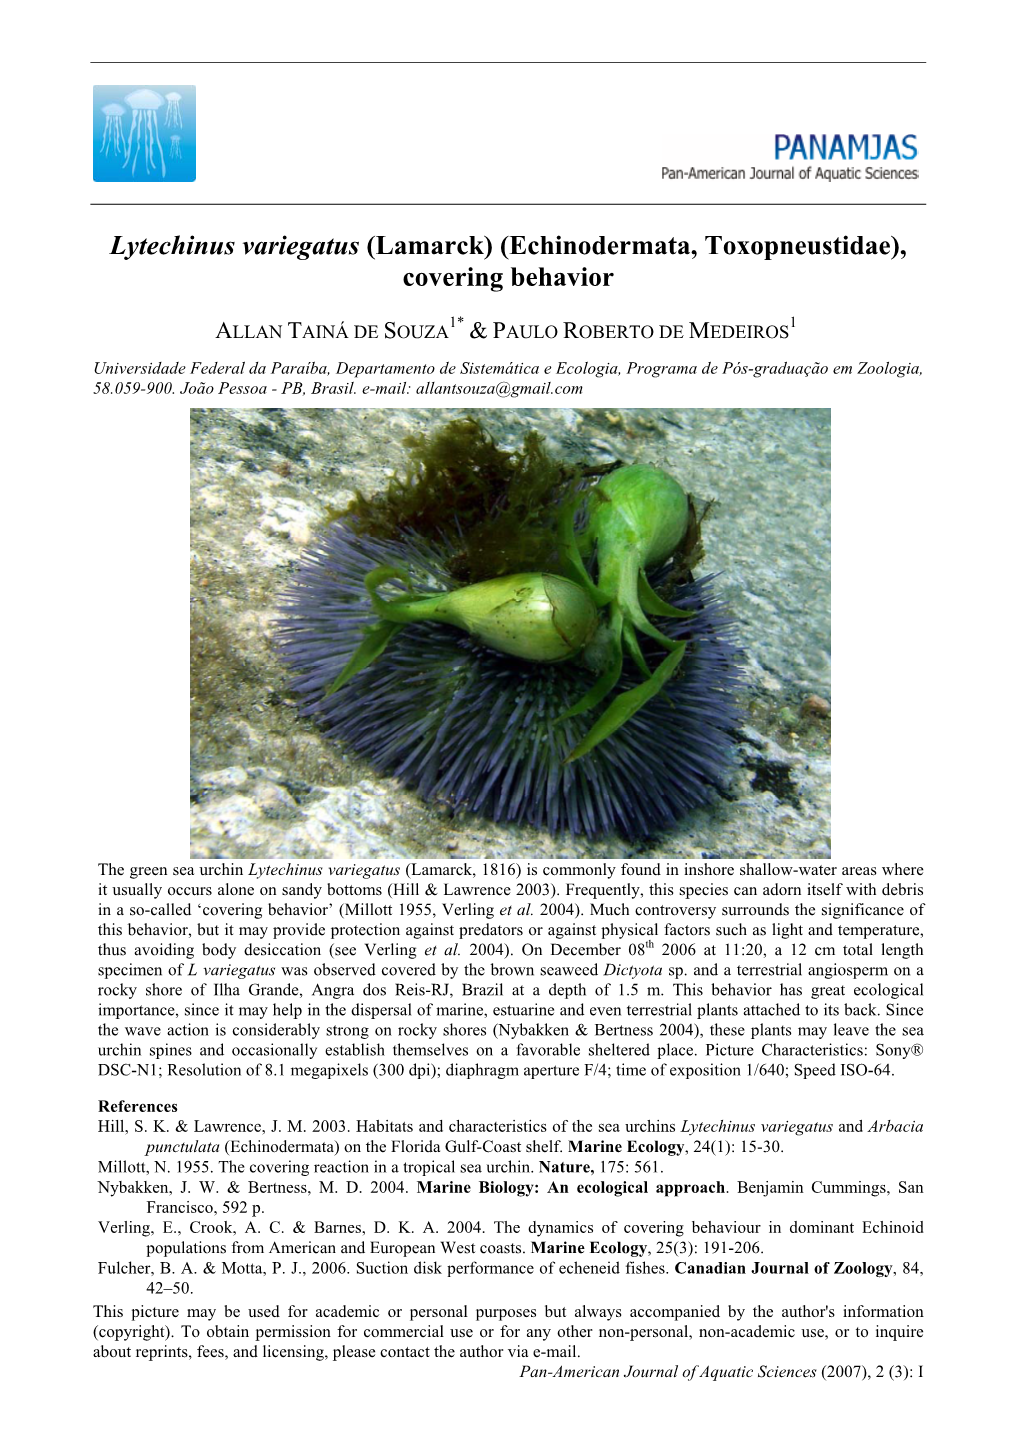 Lytechinus Variegatus (Lamarck) (Echinodermata, Toxopneustidae), Covering Behavior